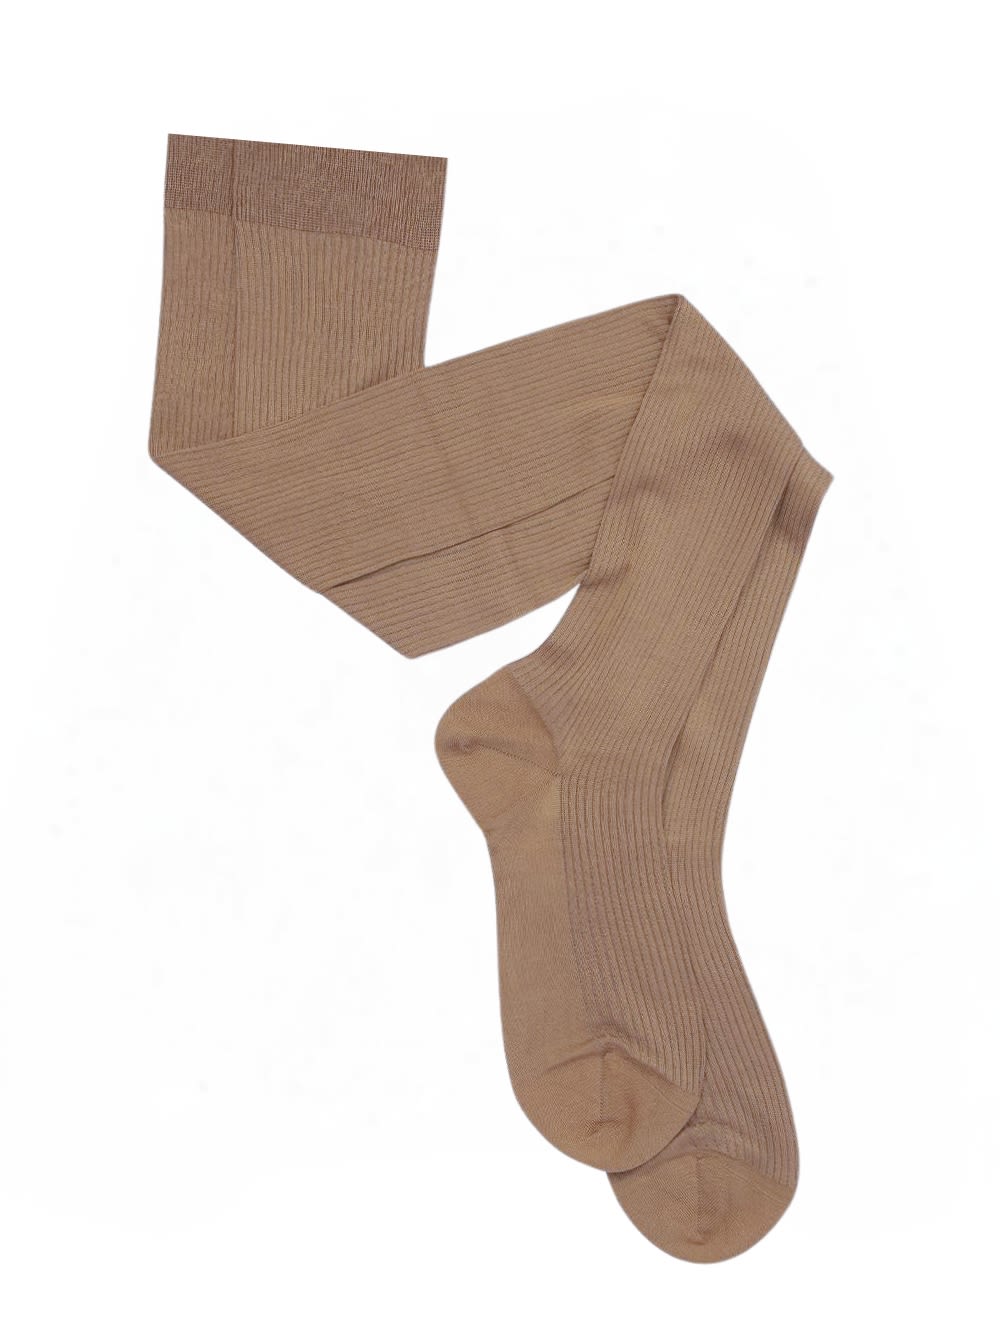 Wg013un4008 Socks